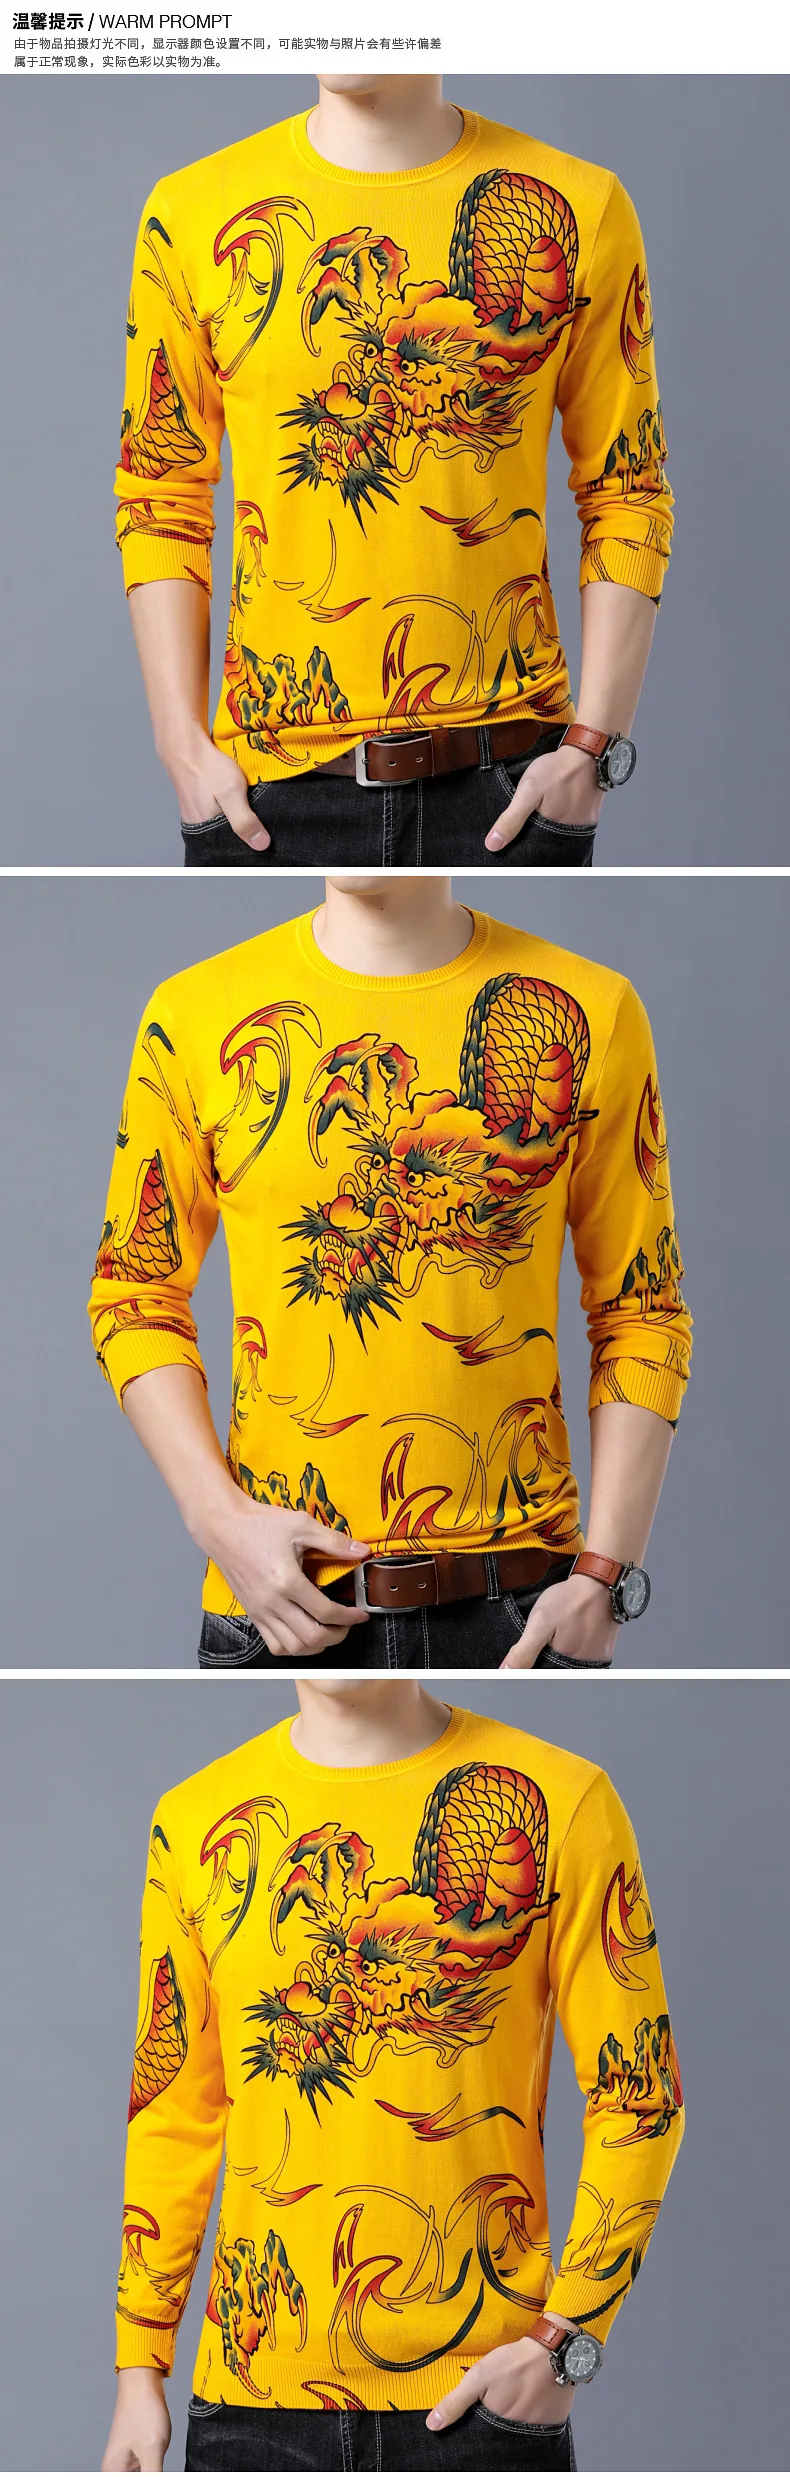 Творческий 3D дракон рисунок печати Роскошные пуловер вязаный свитер осень 2018 высококачественный хлопок Мягкий тонкий свитер для мужчин